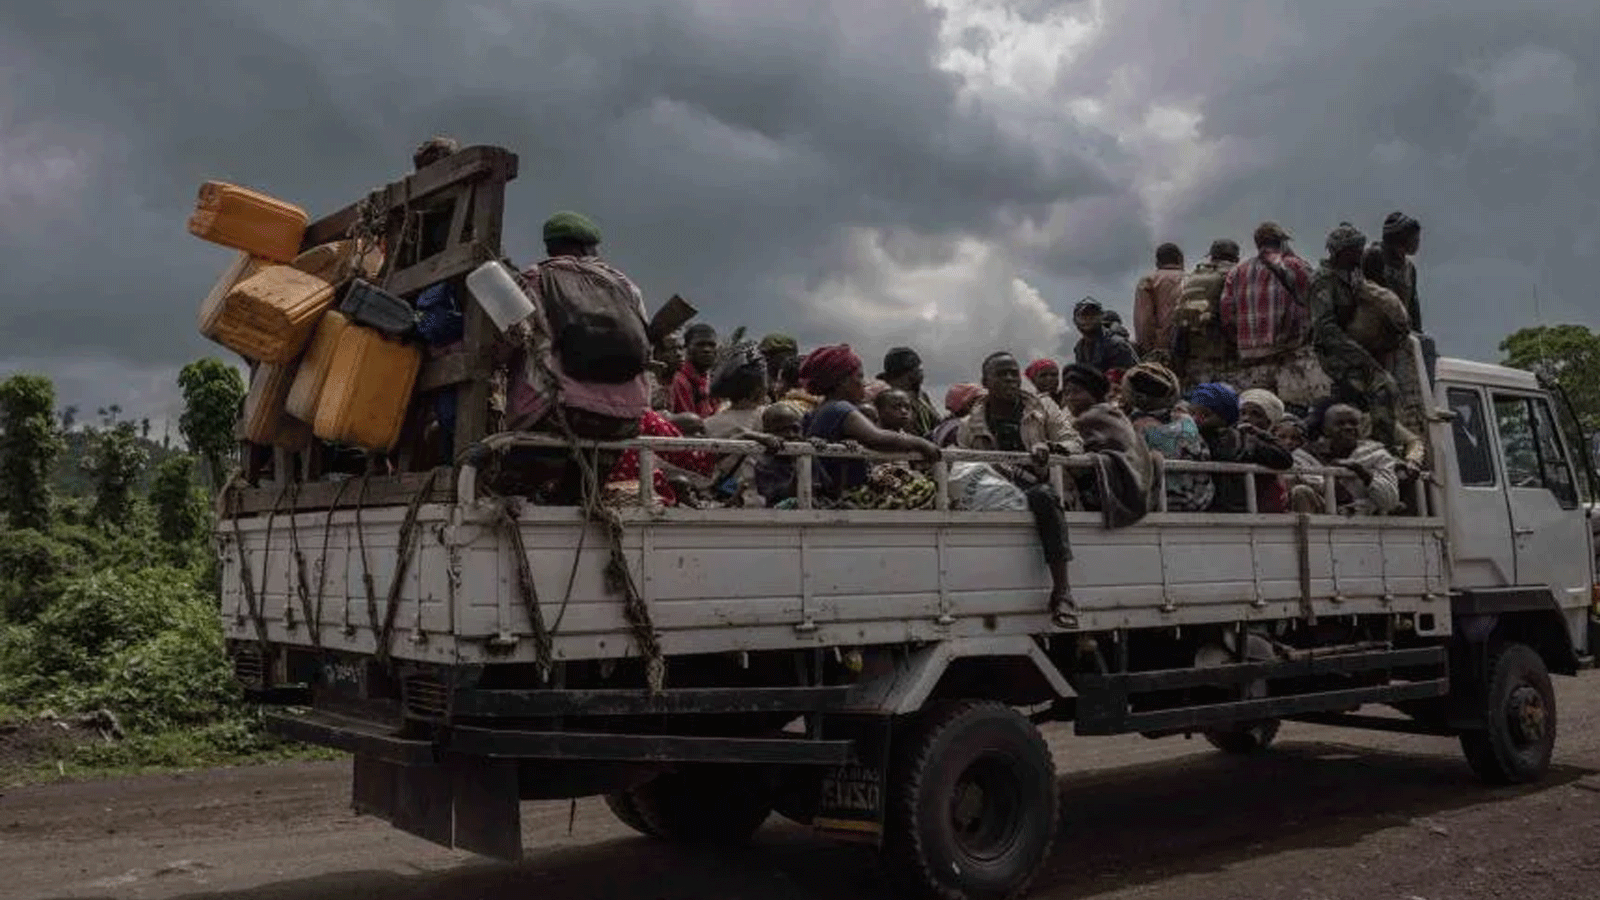 شاحنة مليئة بالأشخاص الذين انقطعت عنهم حركة المرور خلال الاشتباكات بين الجيش الكونغولي ومتمردي حركة 23 آذار\مارس في كيبومبا، على مشارف غوما في شمال كيفو، جمهورية الكونغو الديمقراطية.1 حزيران\يونيو2022